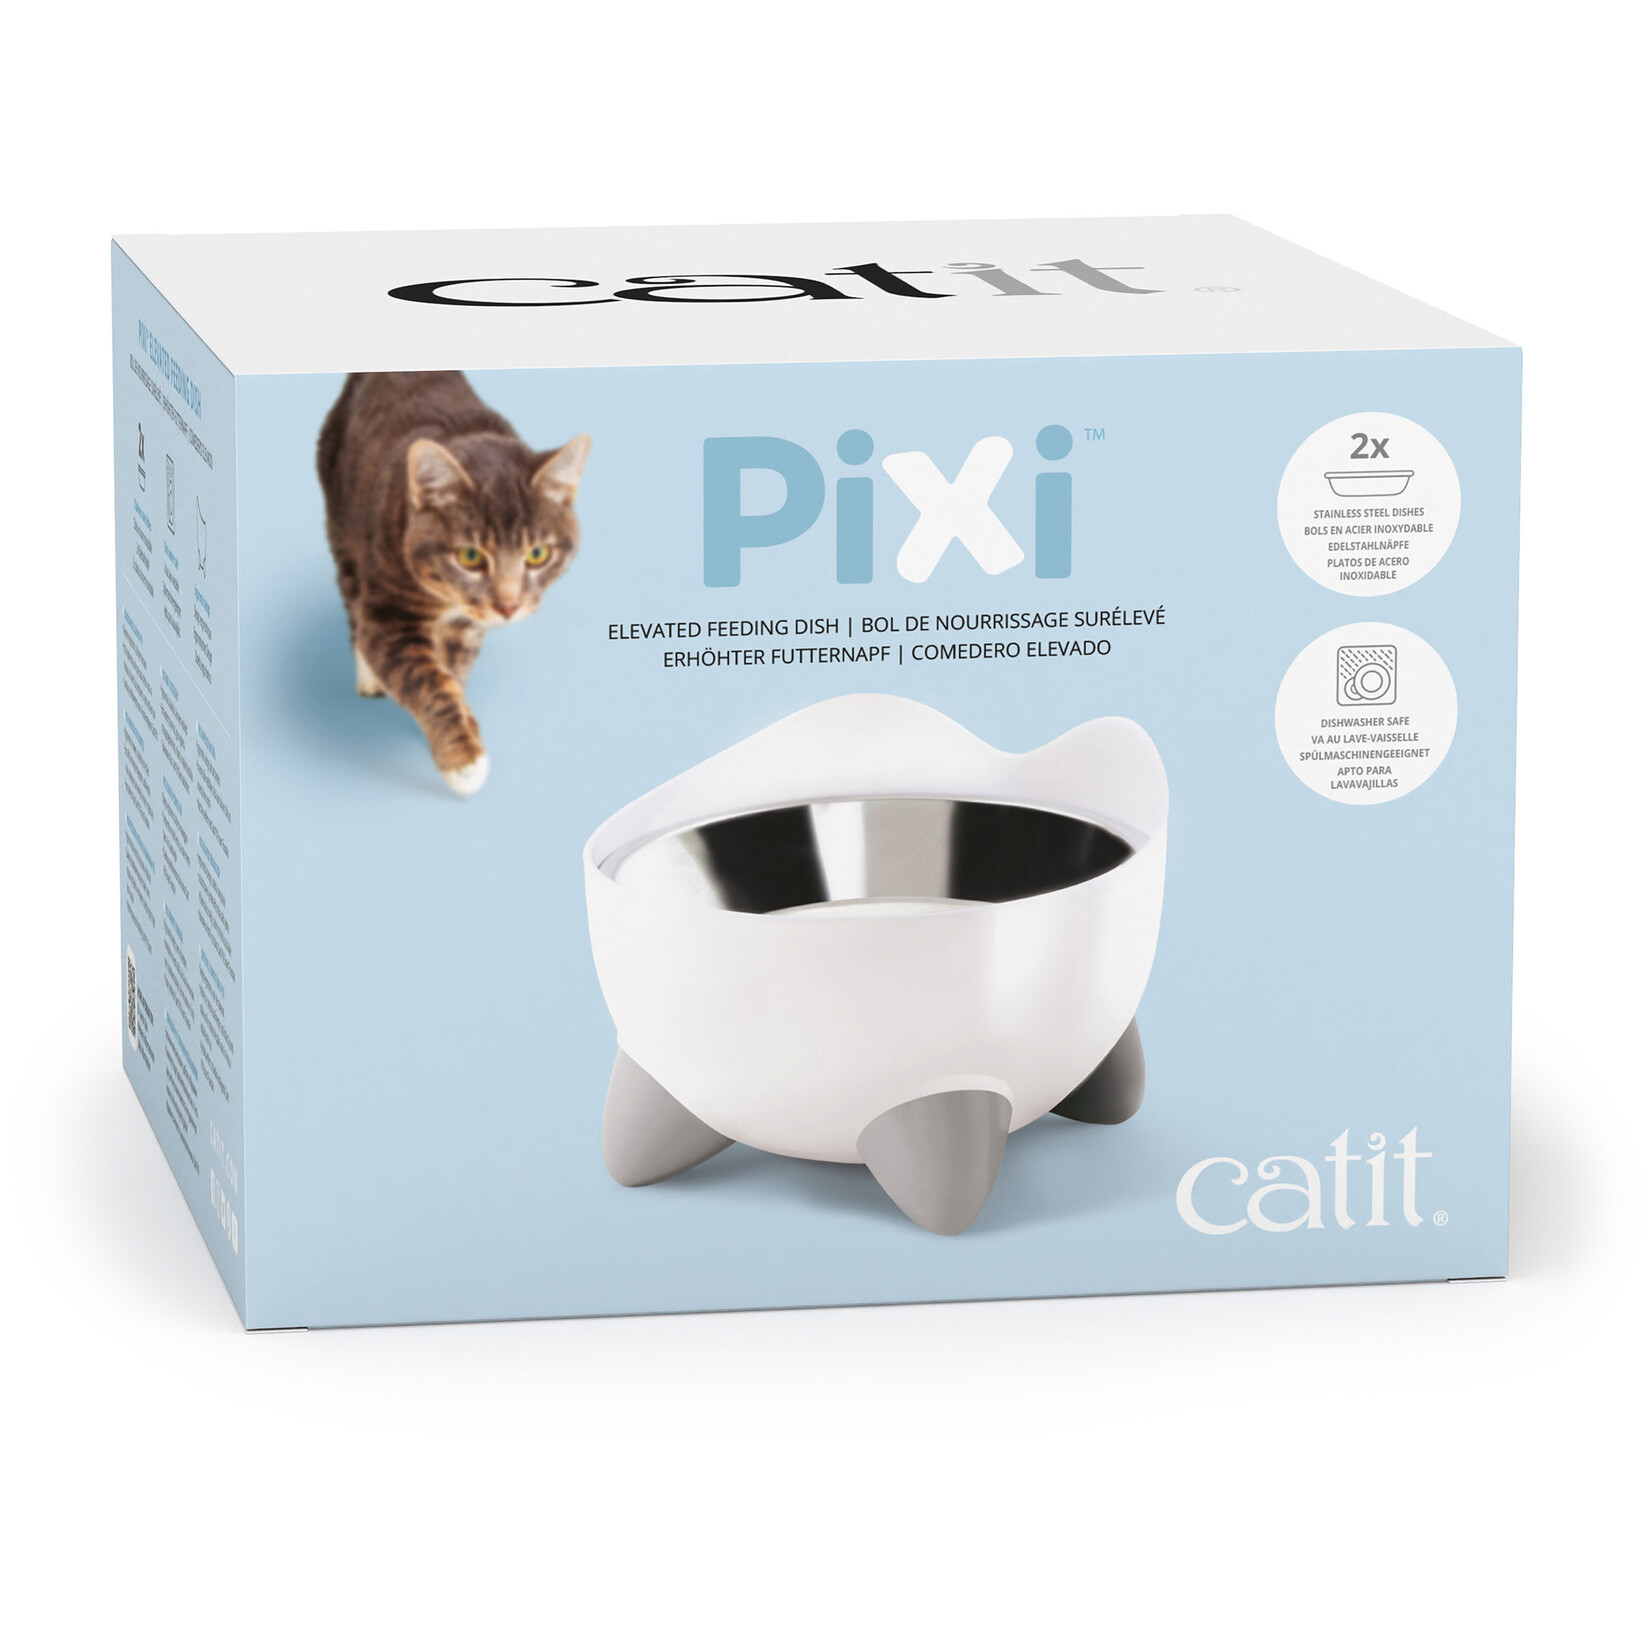 CAT IT Catit PIXI Elevated Feeding Dish